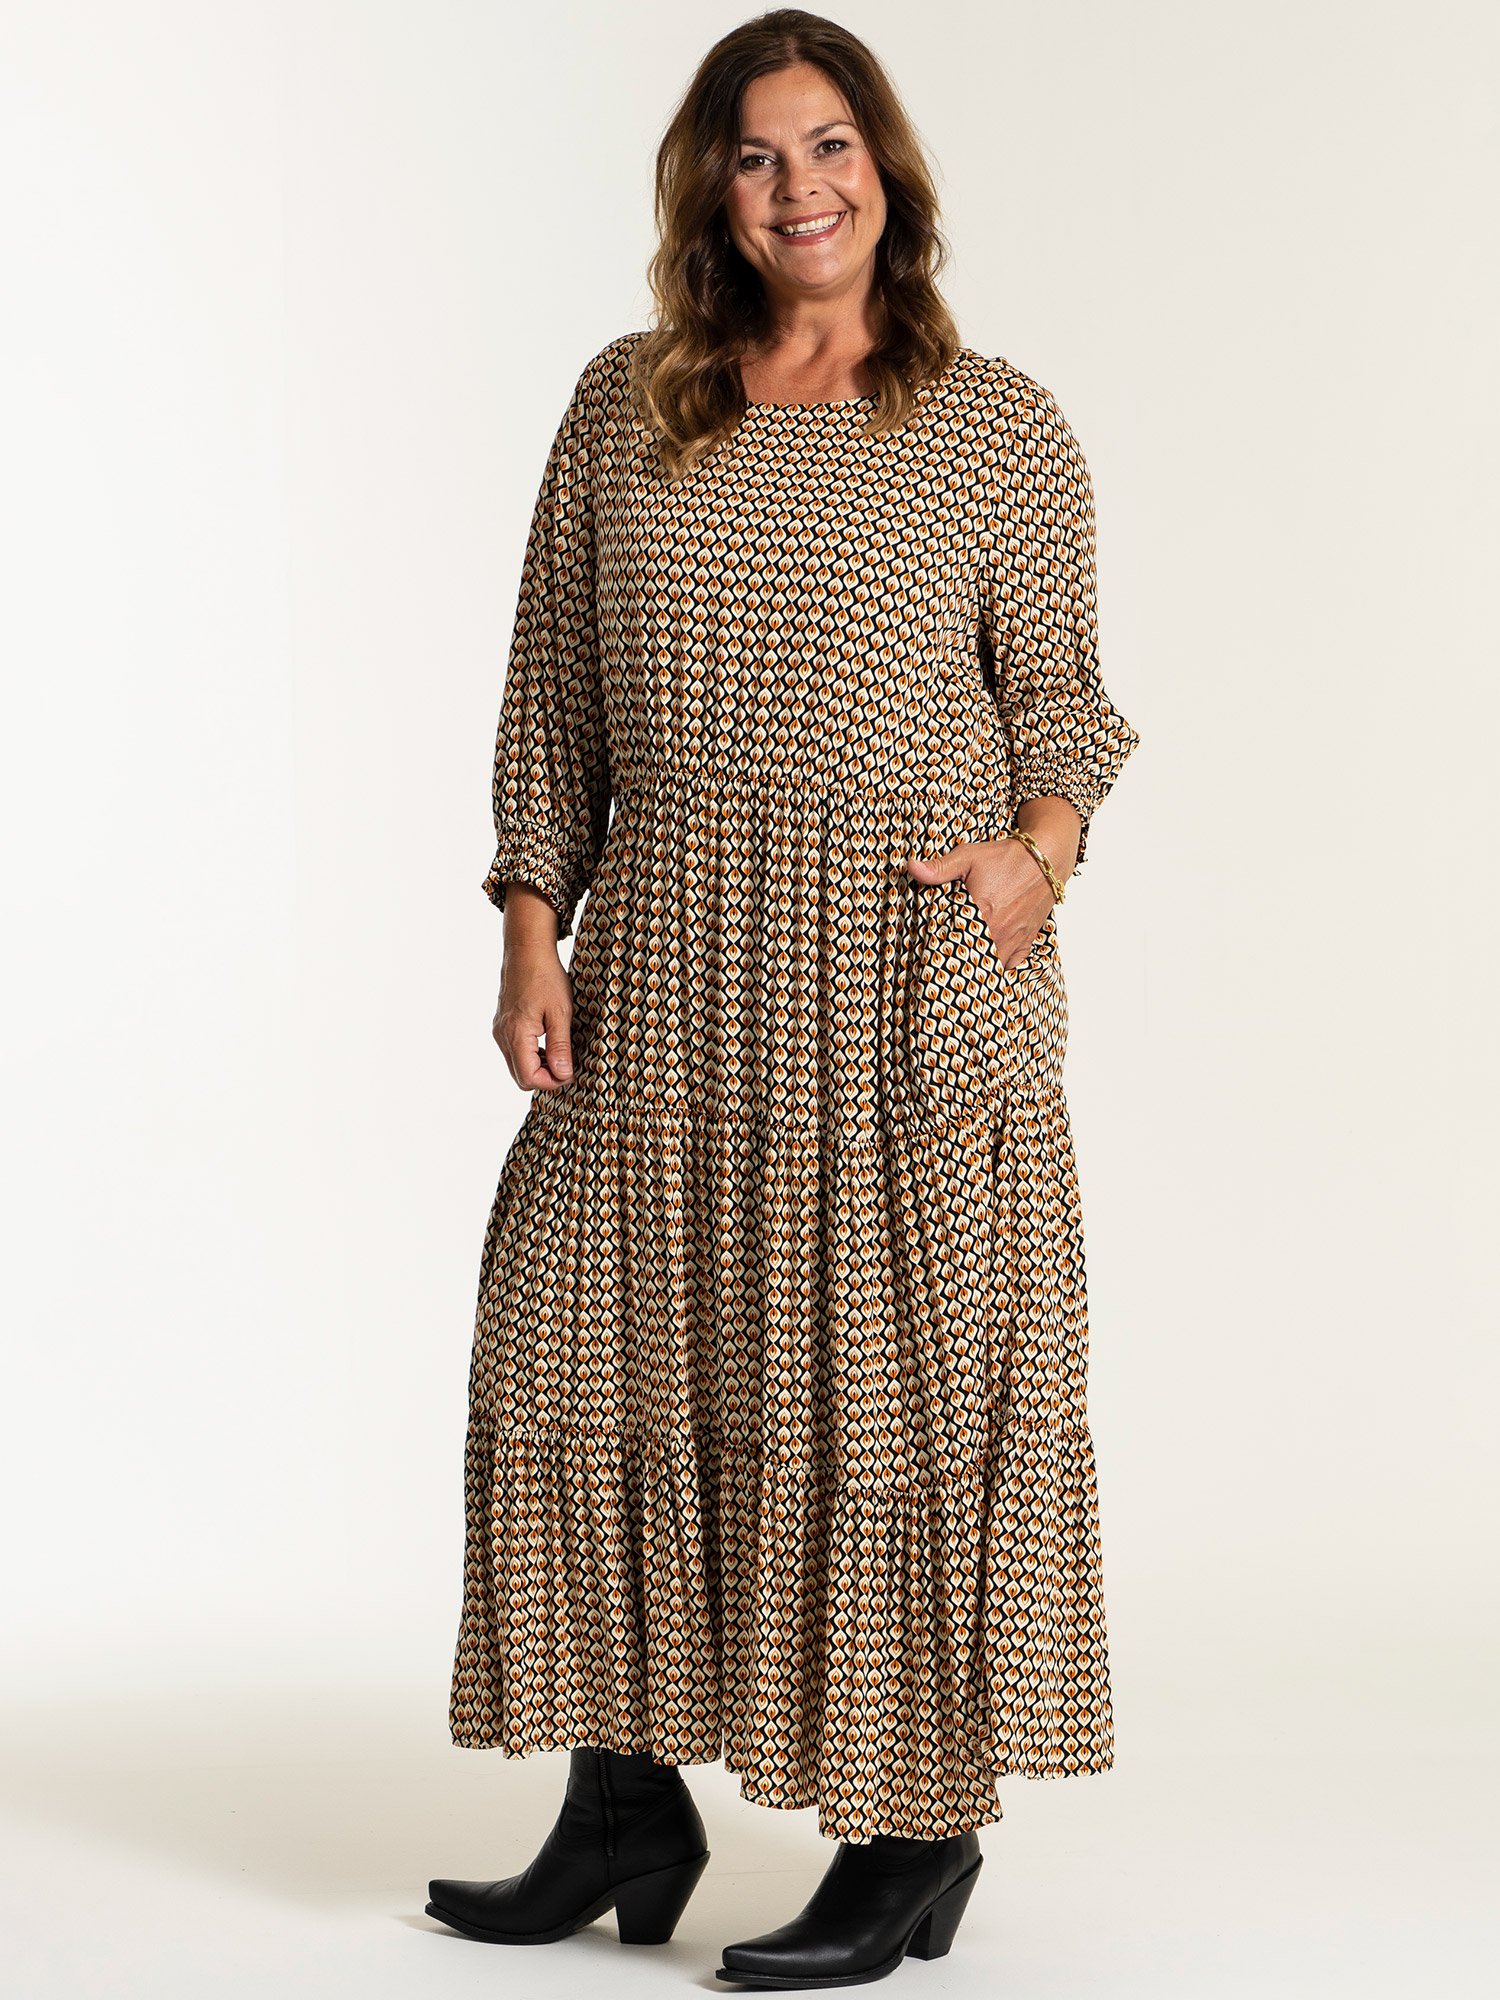 SUSSIE - Lang sort viskose flæse kjole med print fra Gozzip